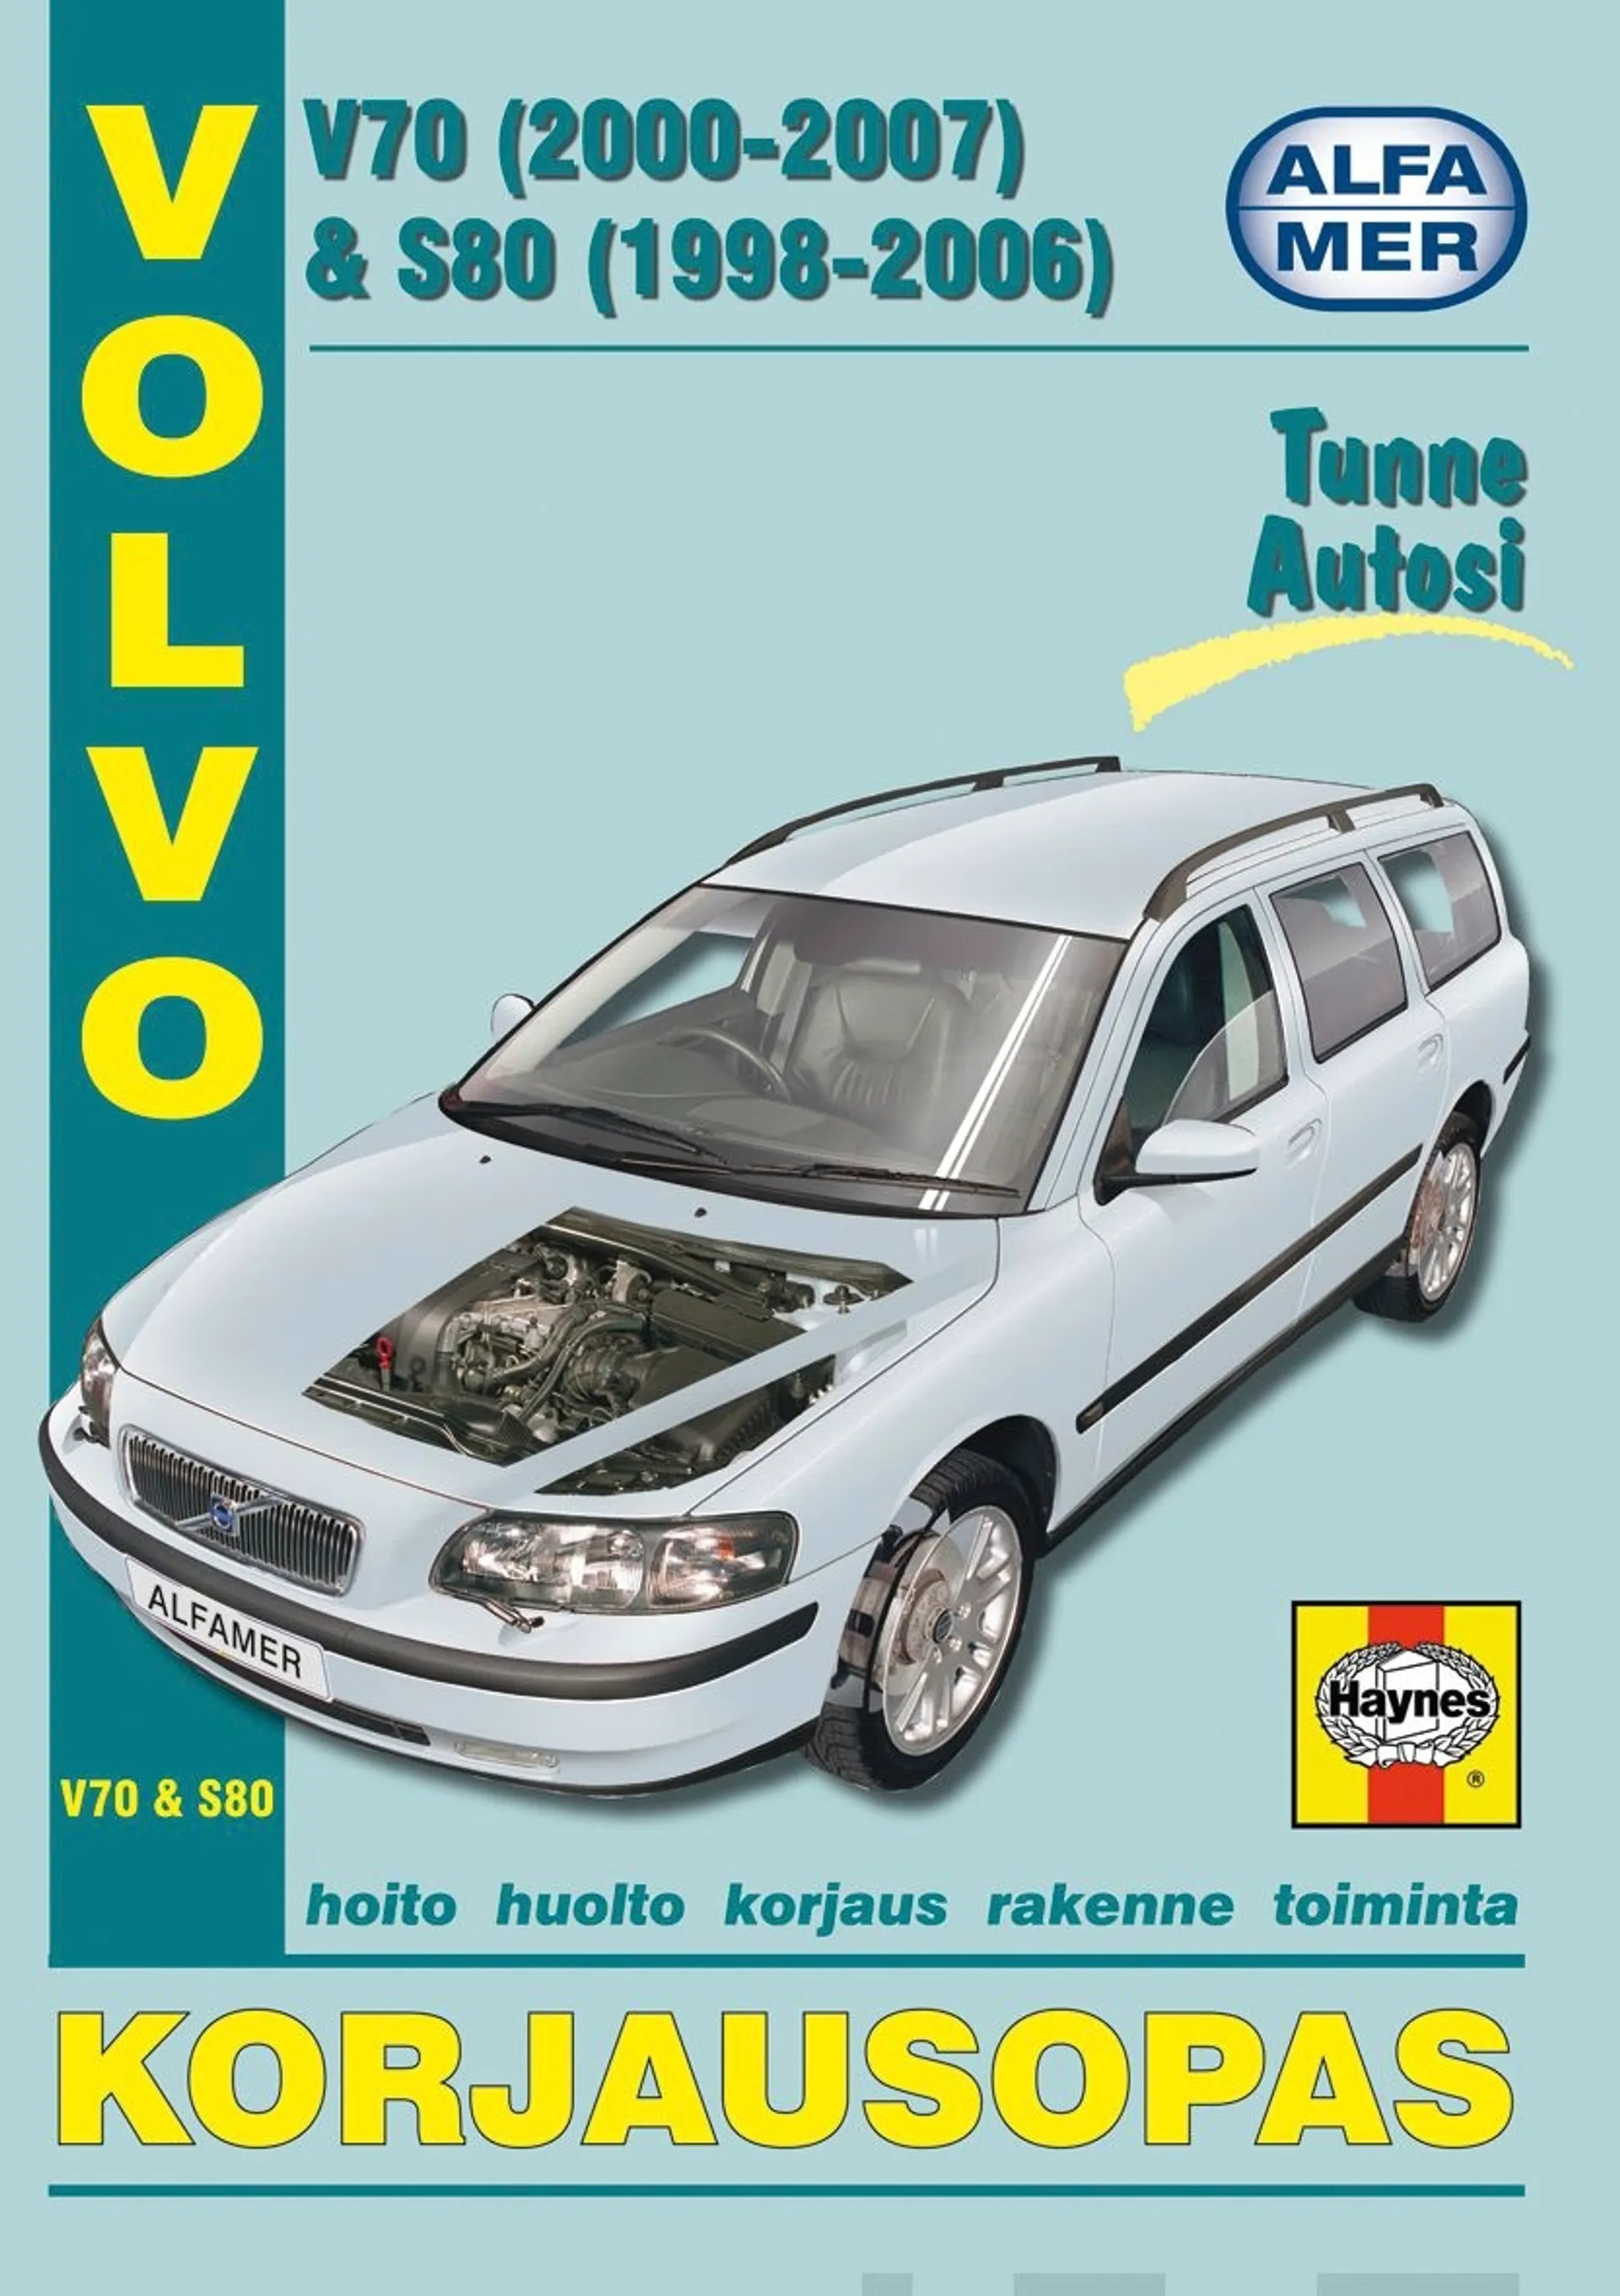 Esko, Volvo V70 (2000-2007) & S80 (1998-2006) - korjausopas